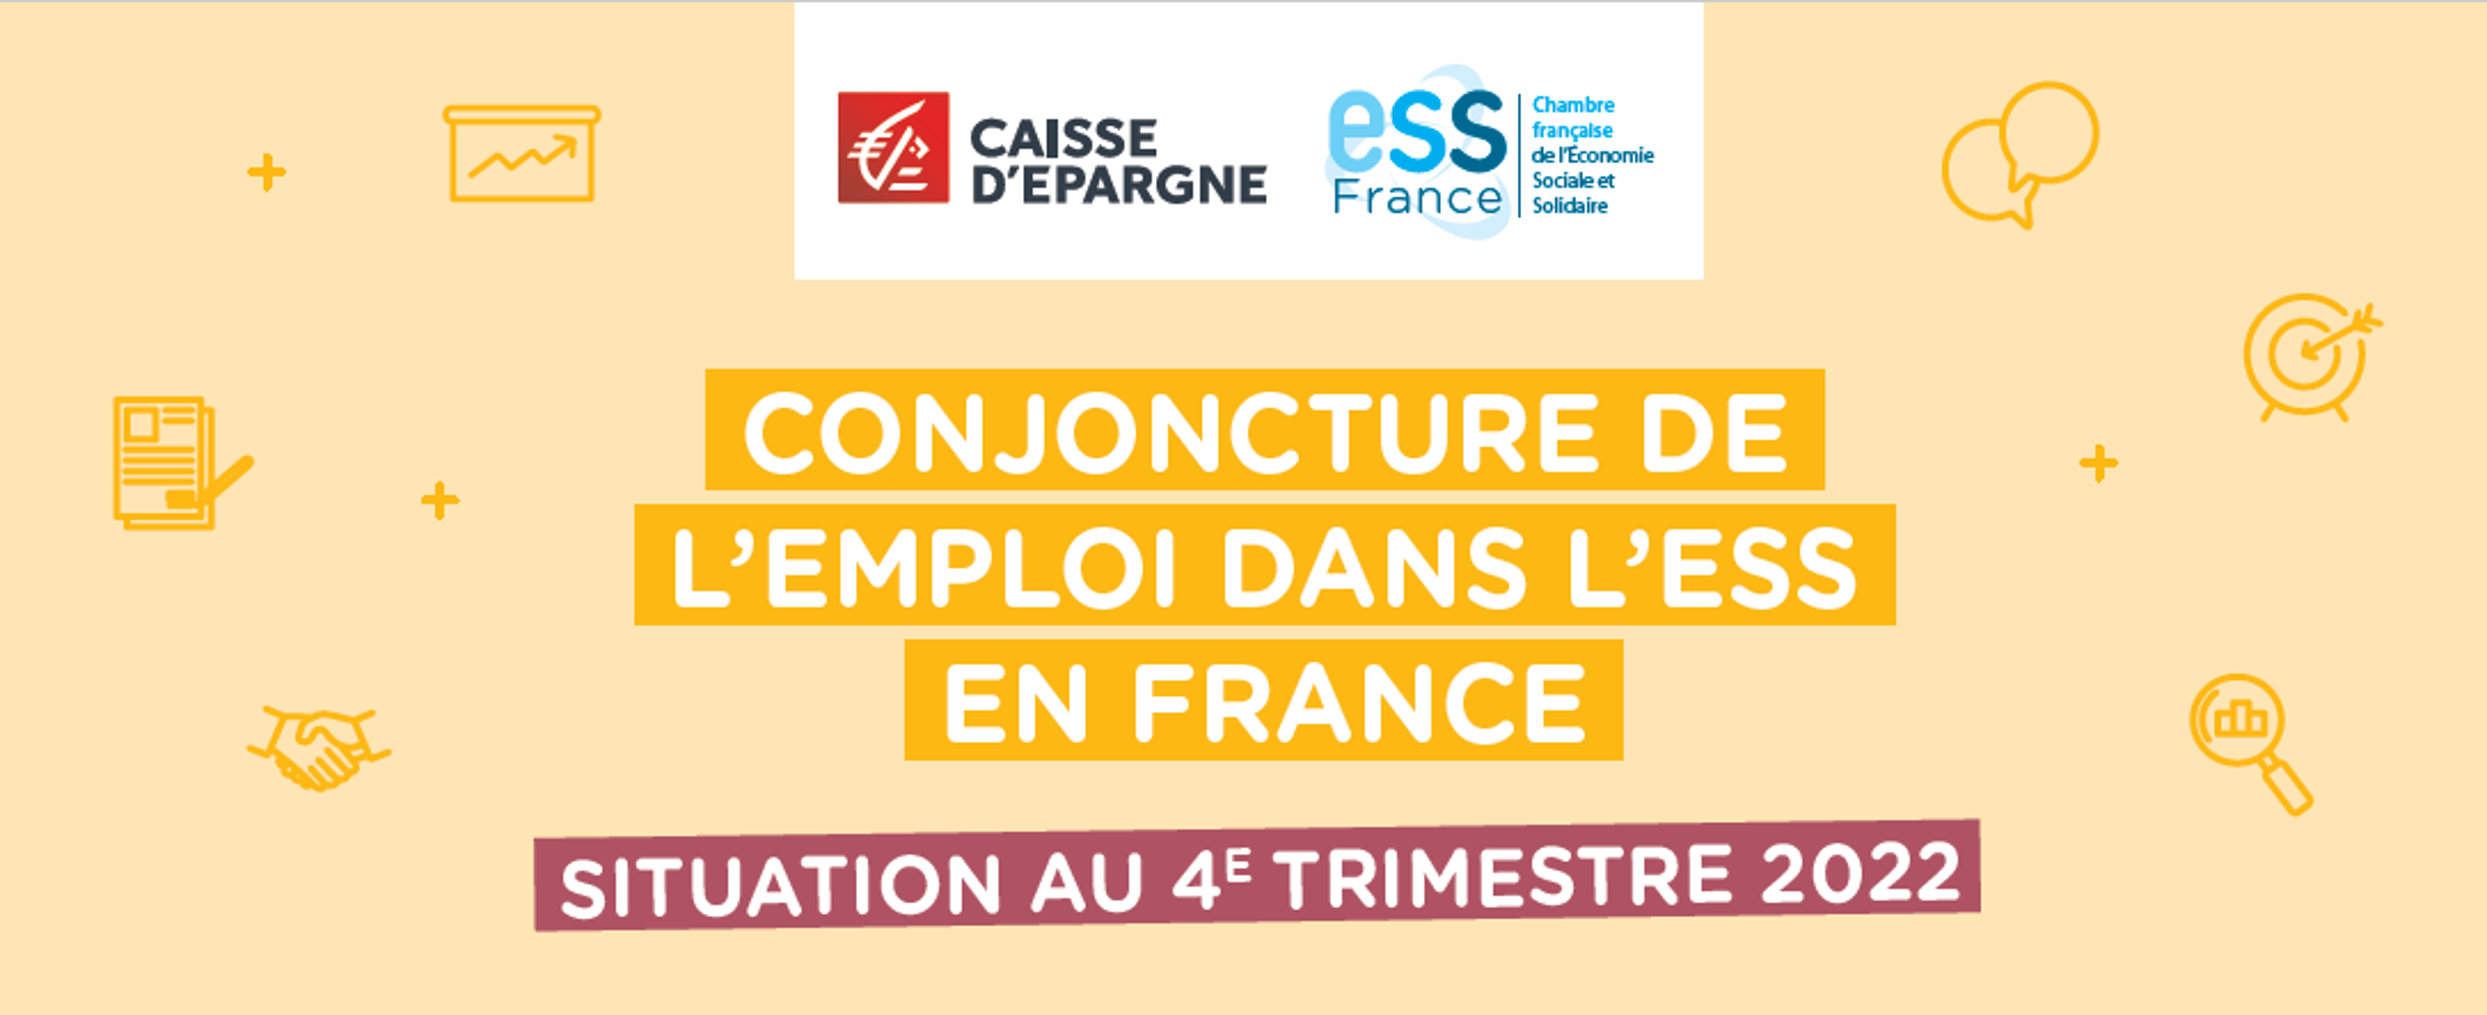 Image - Conjoncture de l'emploi dans l'ESS en France, situation au 4e trimestre 2022